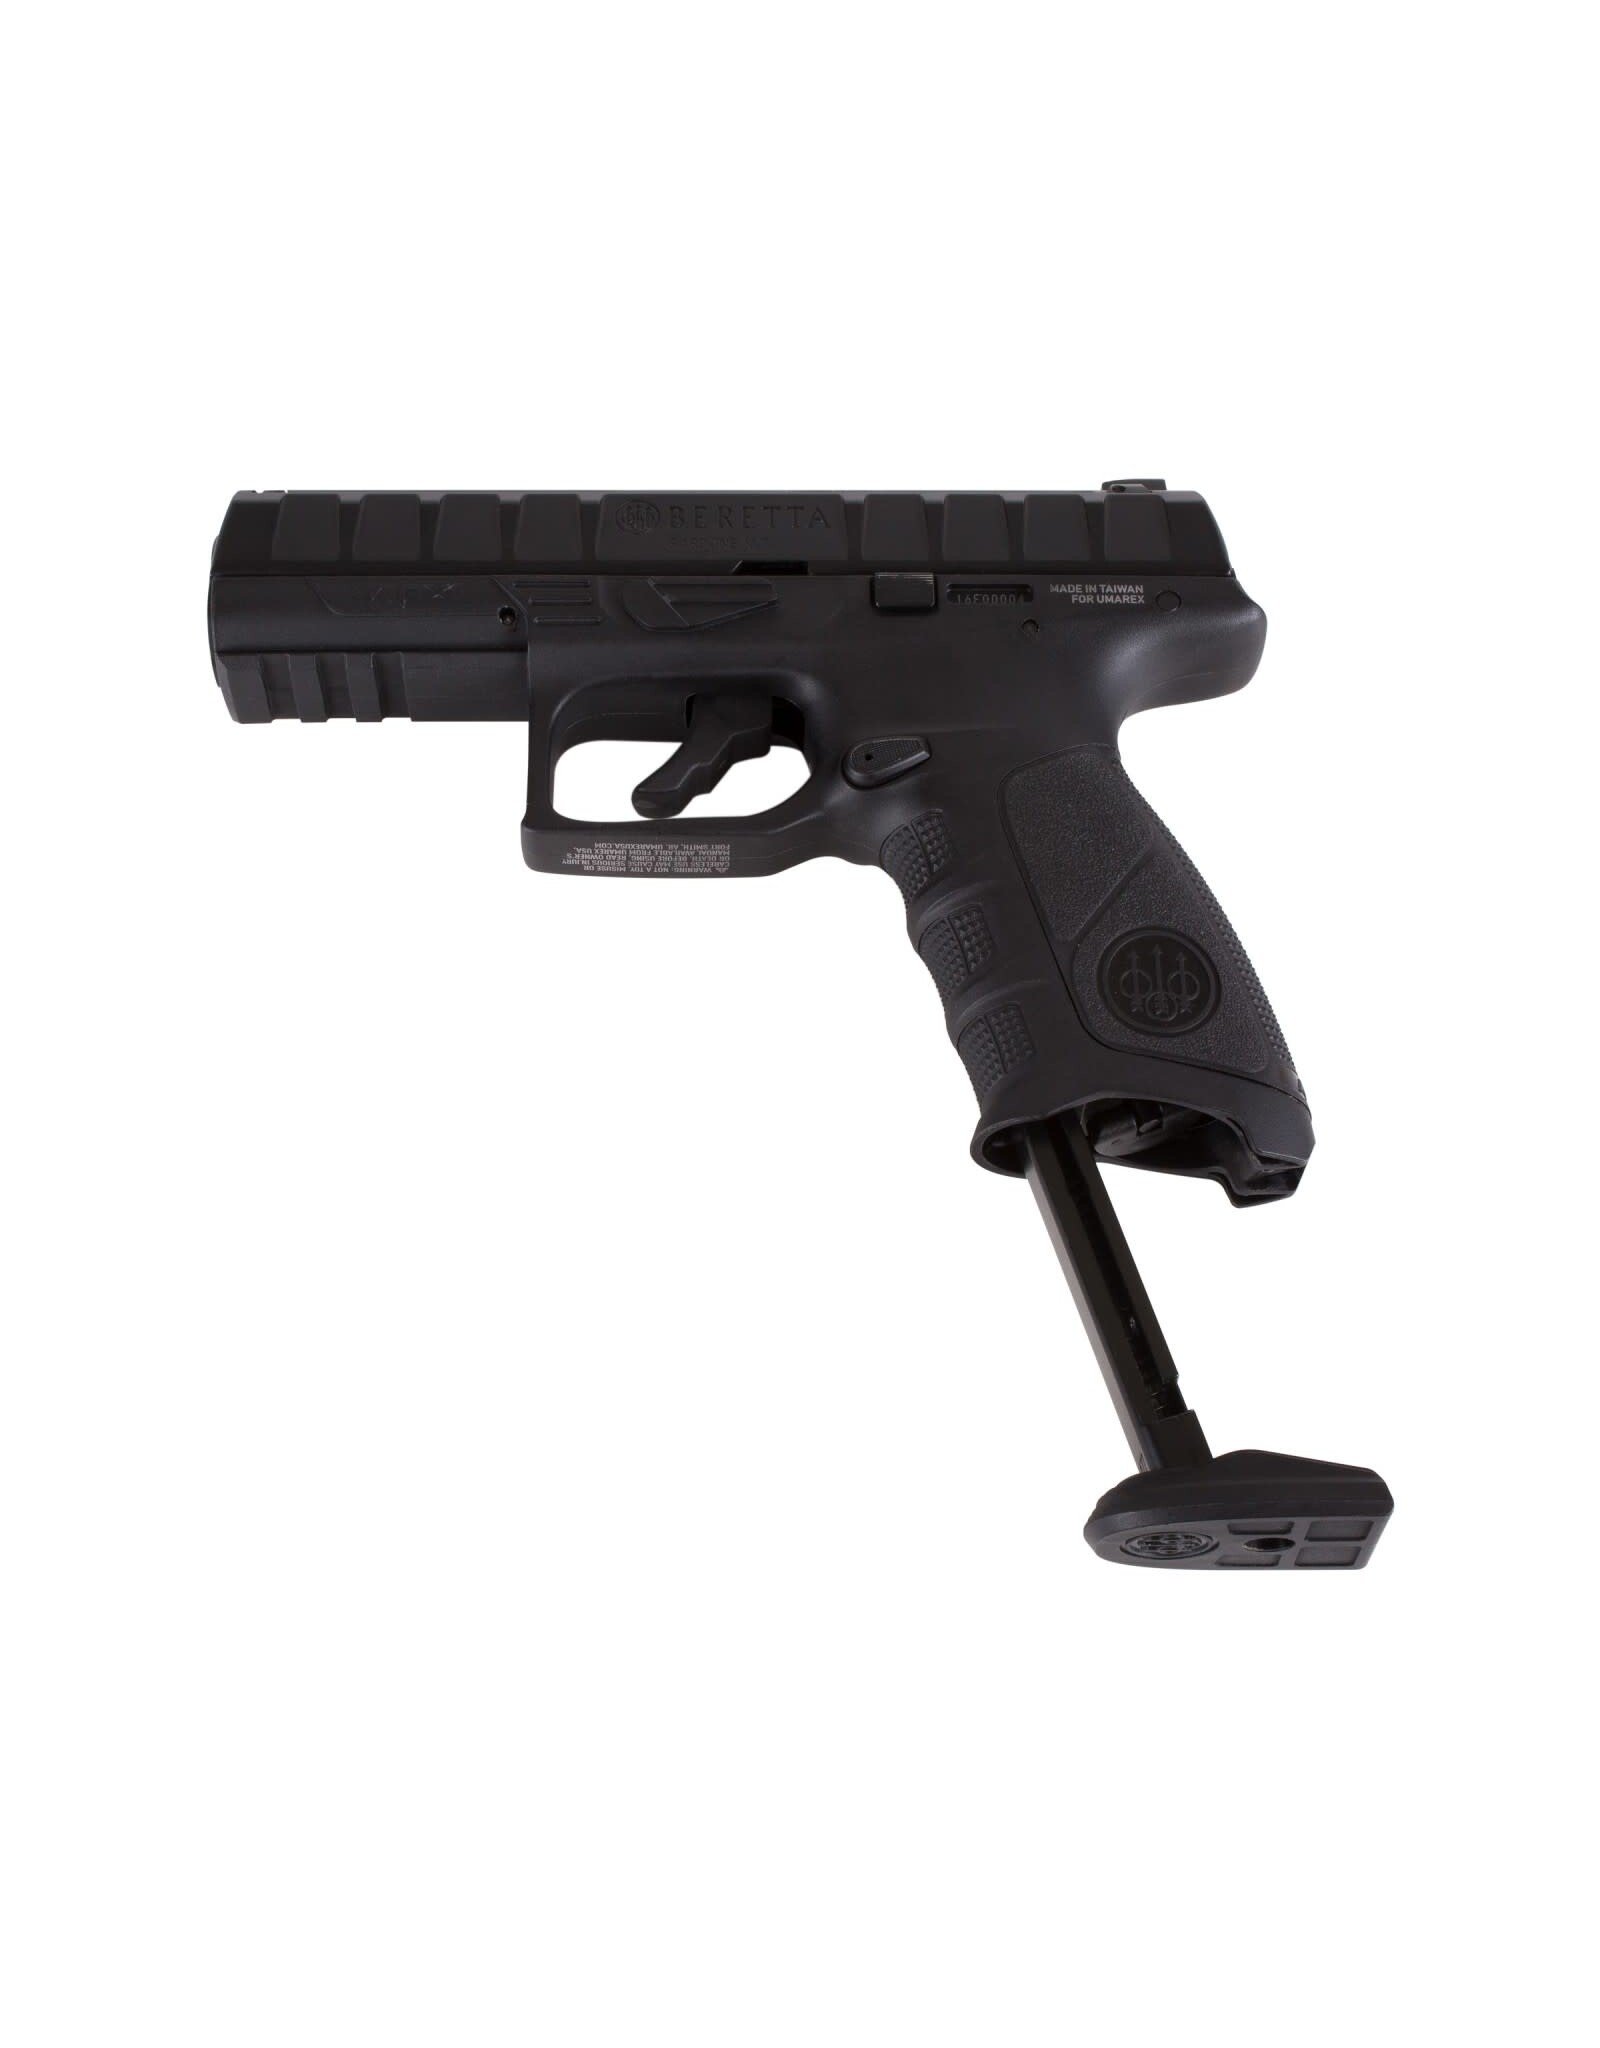 Beretta Beretta APX BB C02 Pistol w/ Blowback -395 FPS